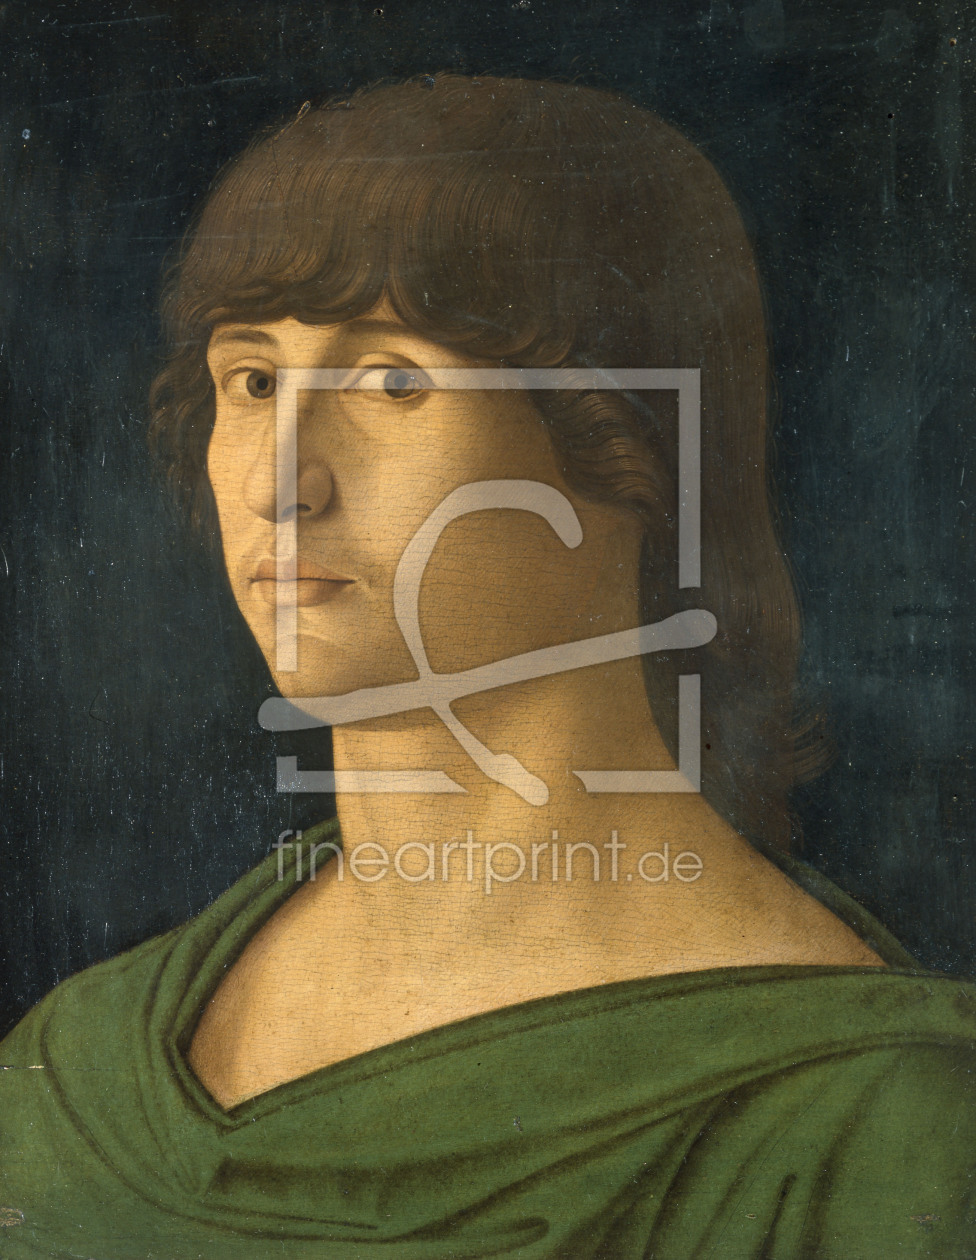 Bild-Nr.: 30001294 Giov.Bellini / Portr.ofa Young Man / C15 erstellt von Bellini, Giovanni